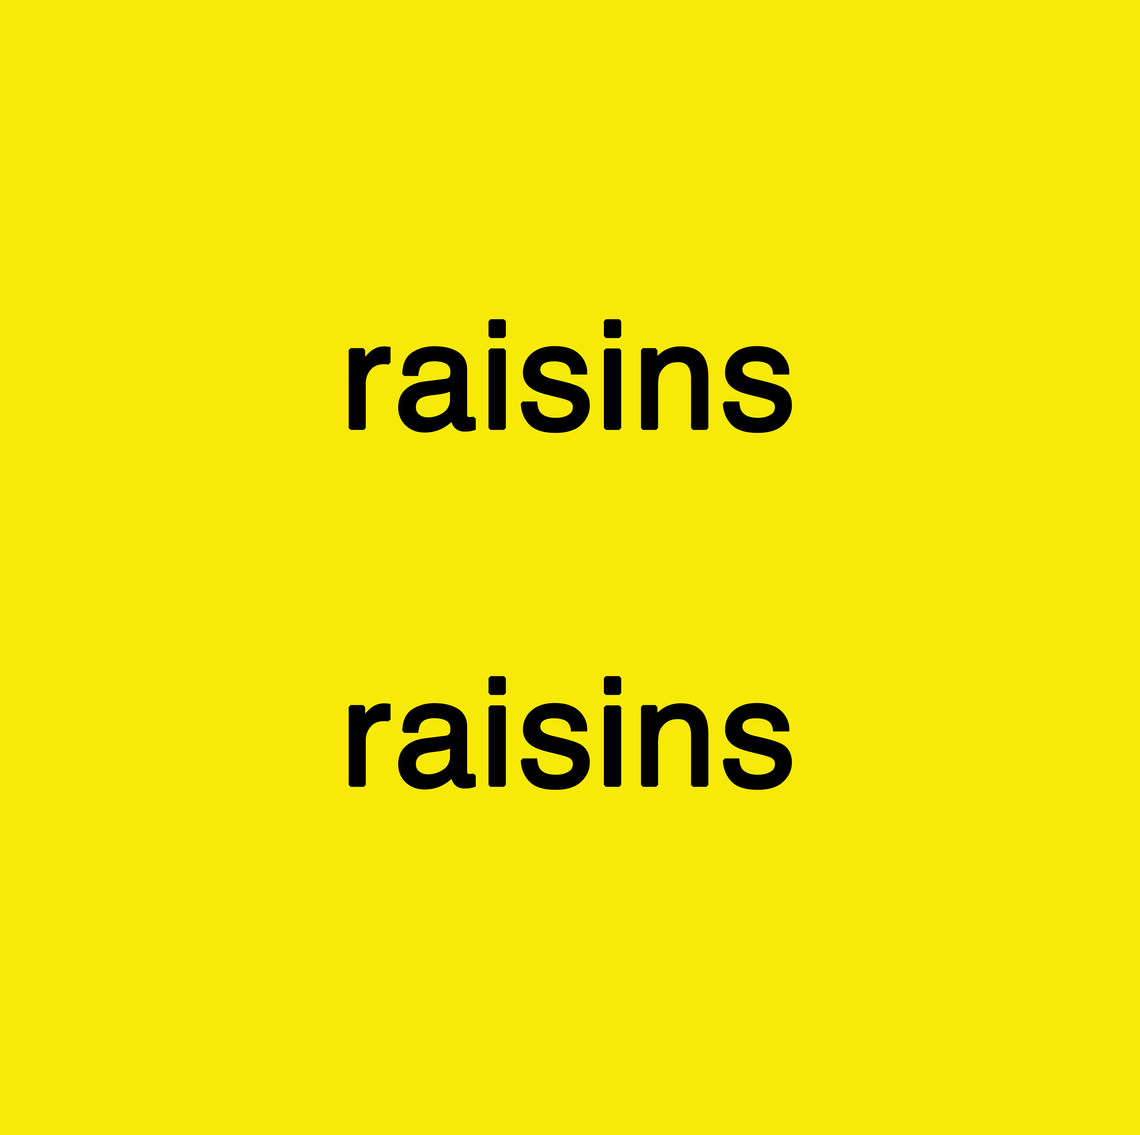  - raisins raisins